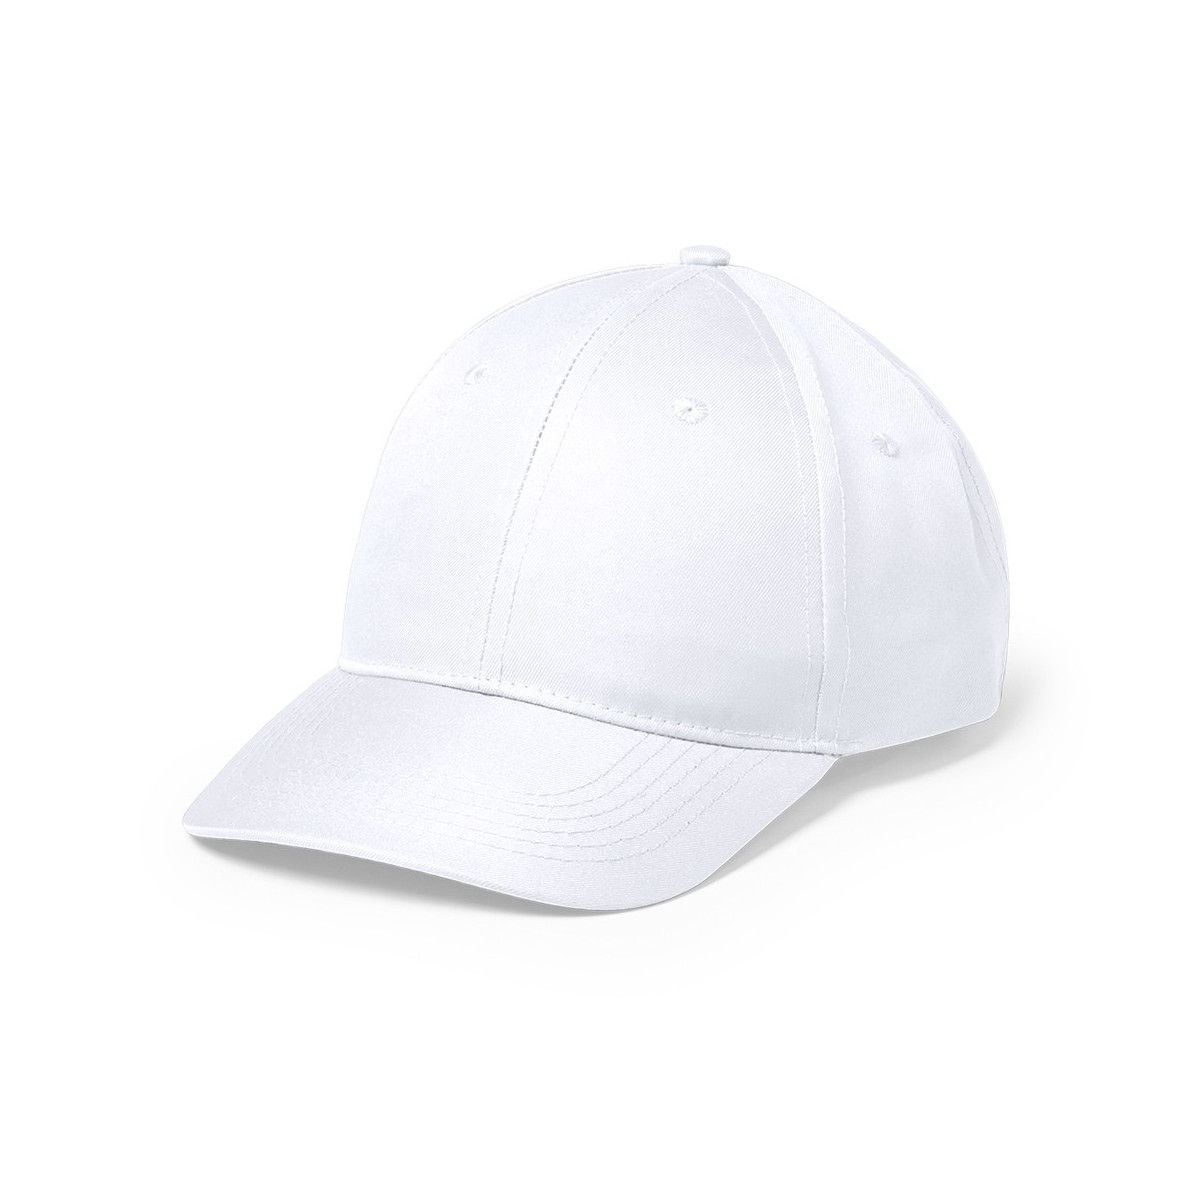 Speciale berretto sportivo bianco a sublimazione